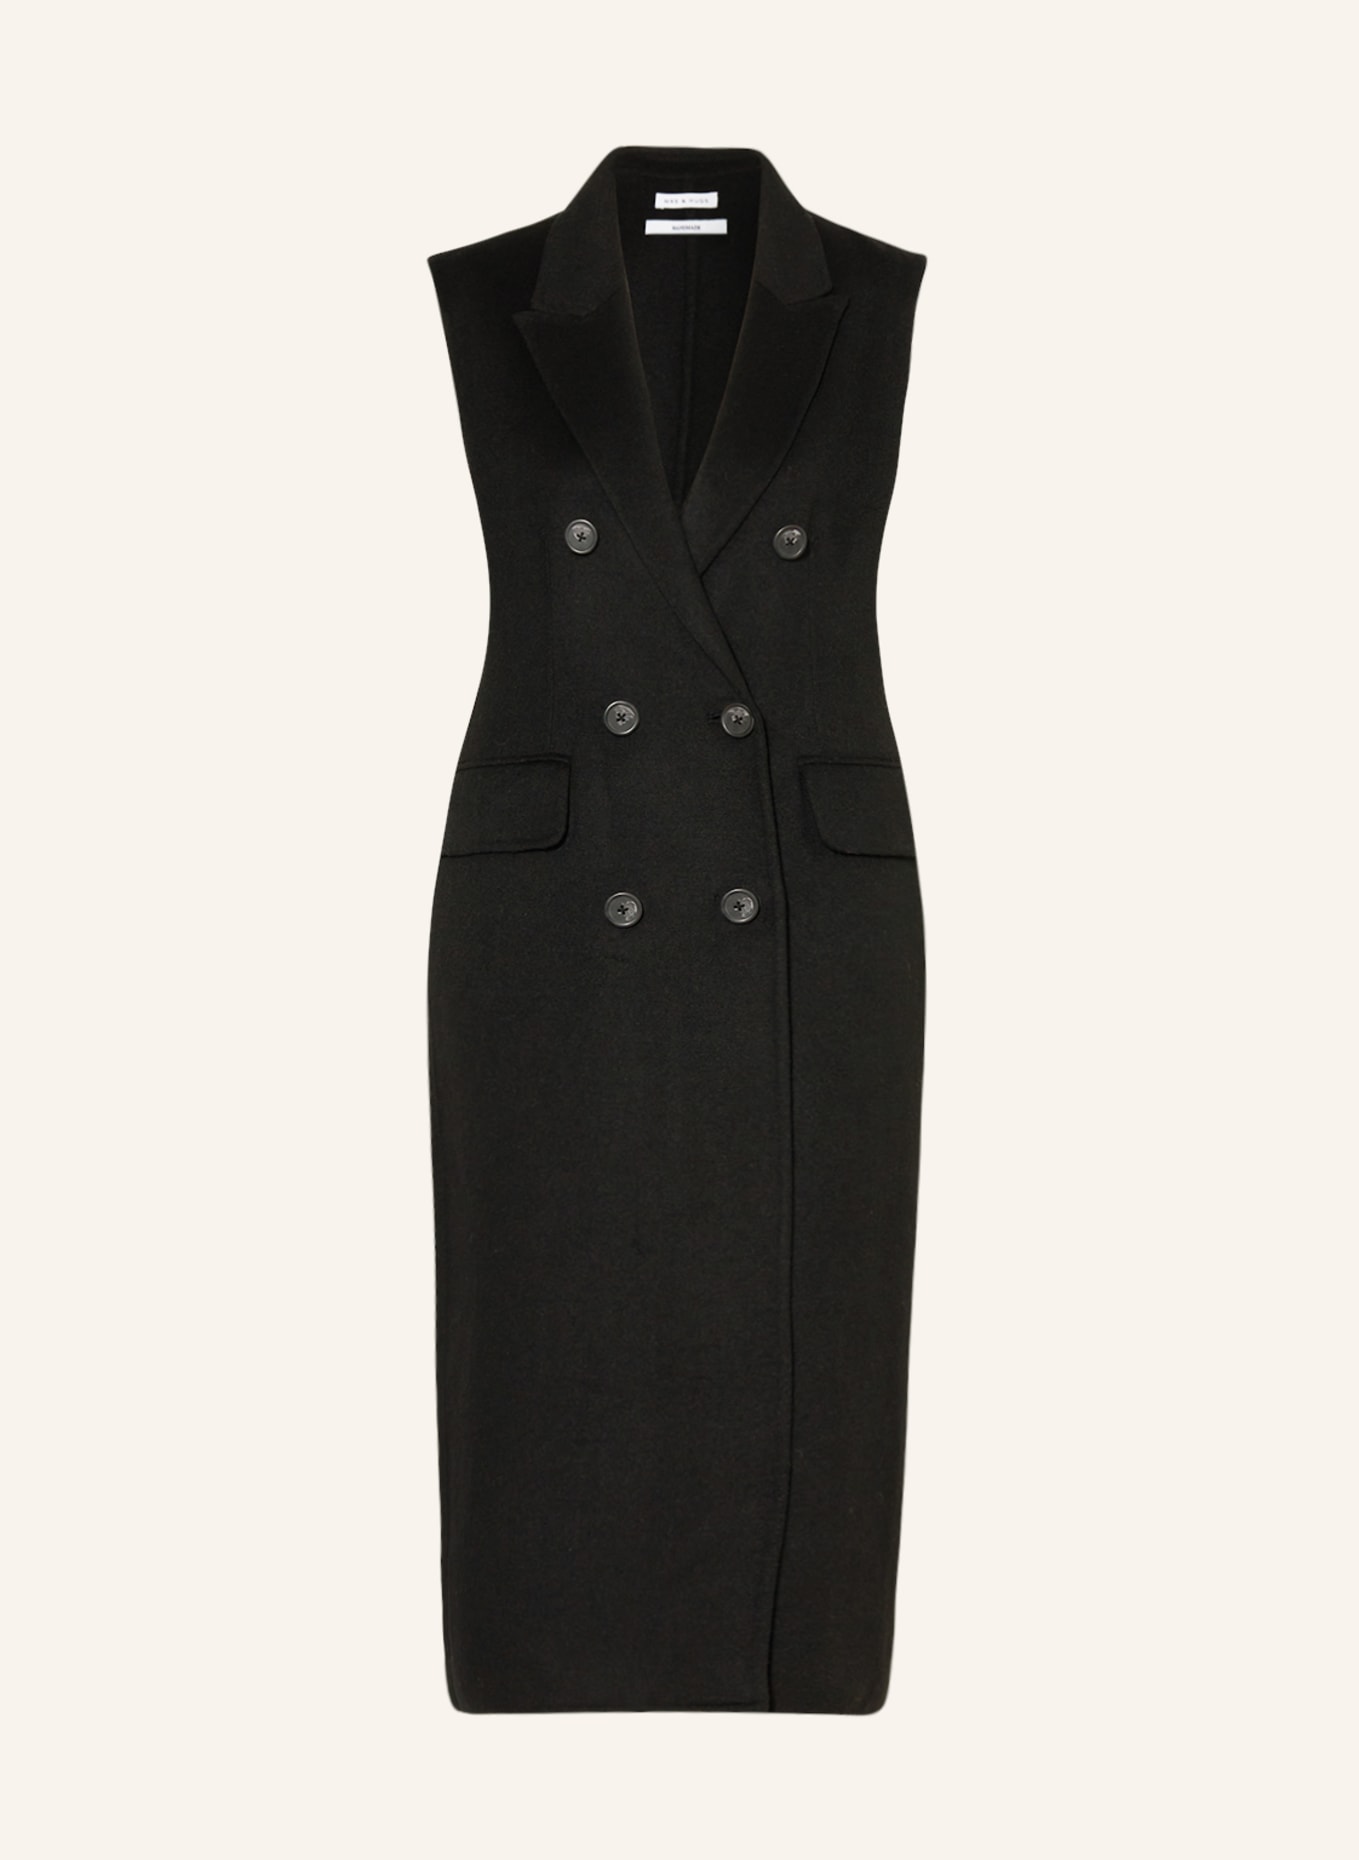 MRS & HUGS Blazer vest, Color: BLACK (Image 1)